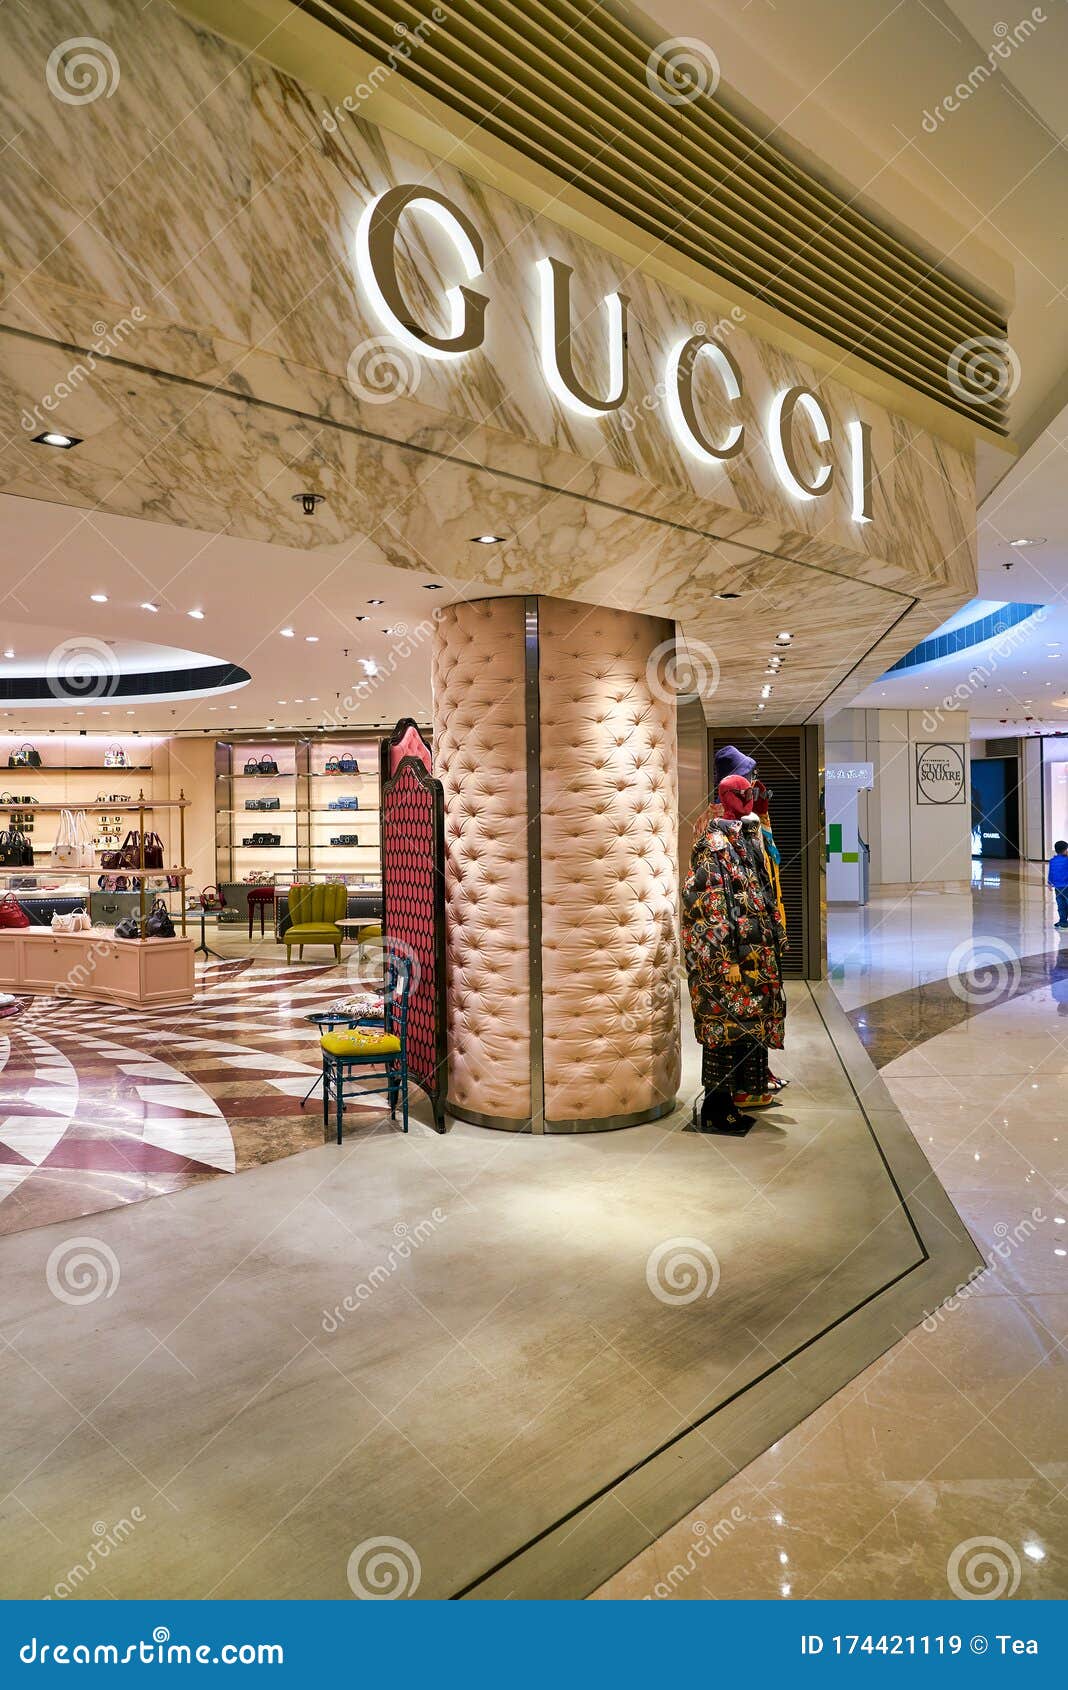 Gucci Shop Hong Kong Photos Free & Royalty-Free Photos from Dreamstime